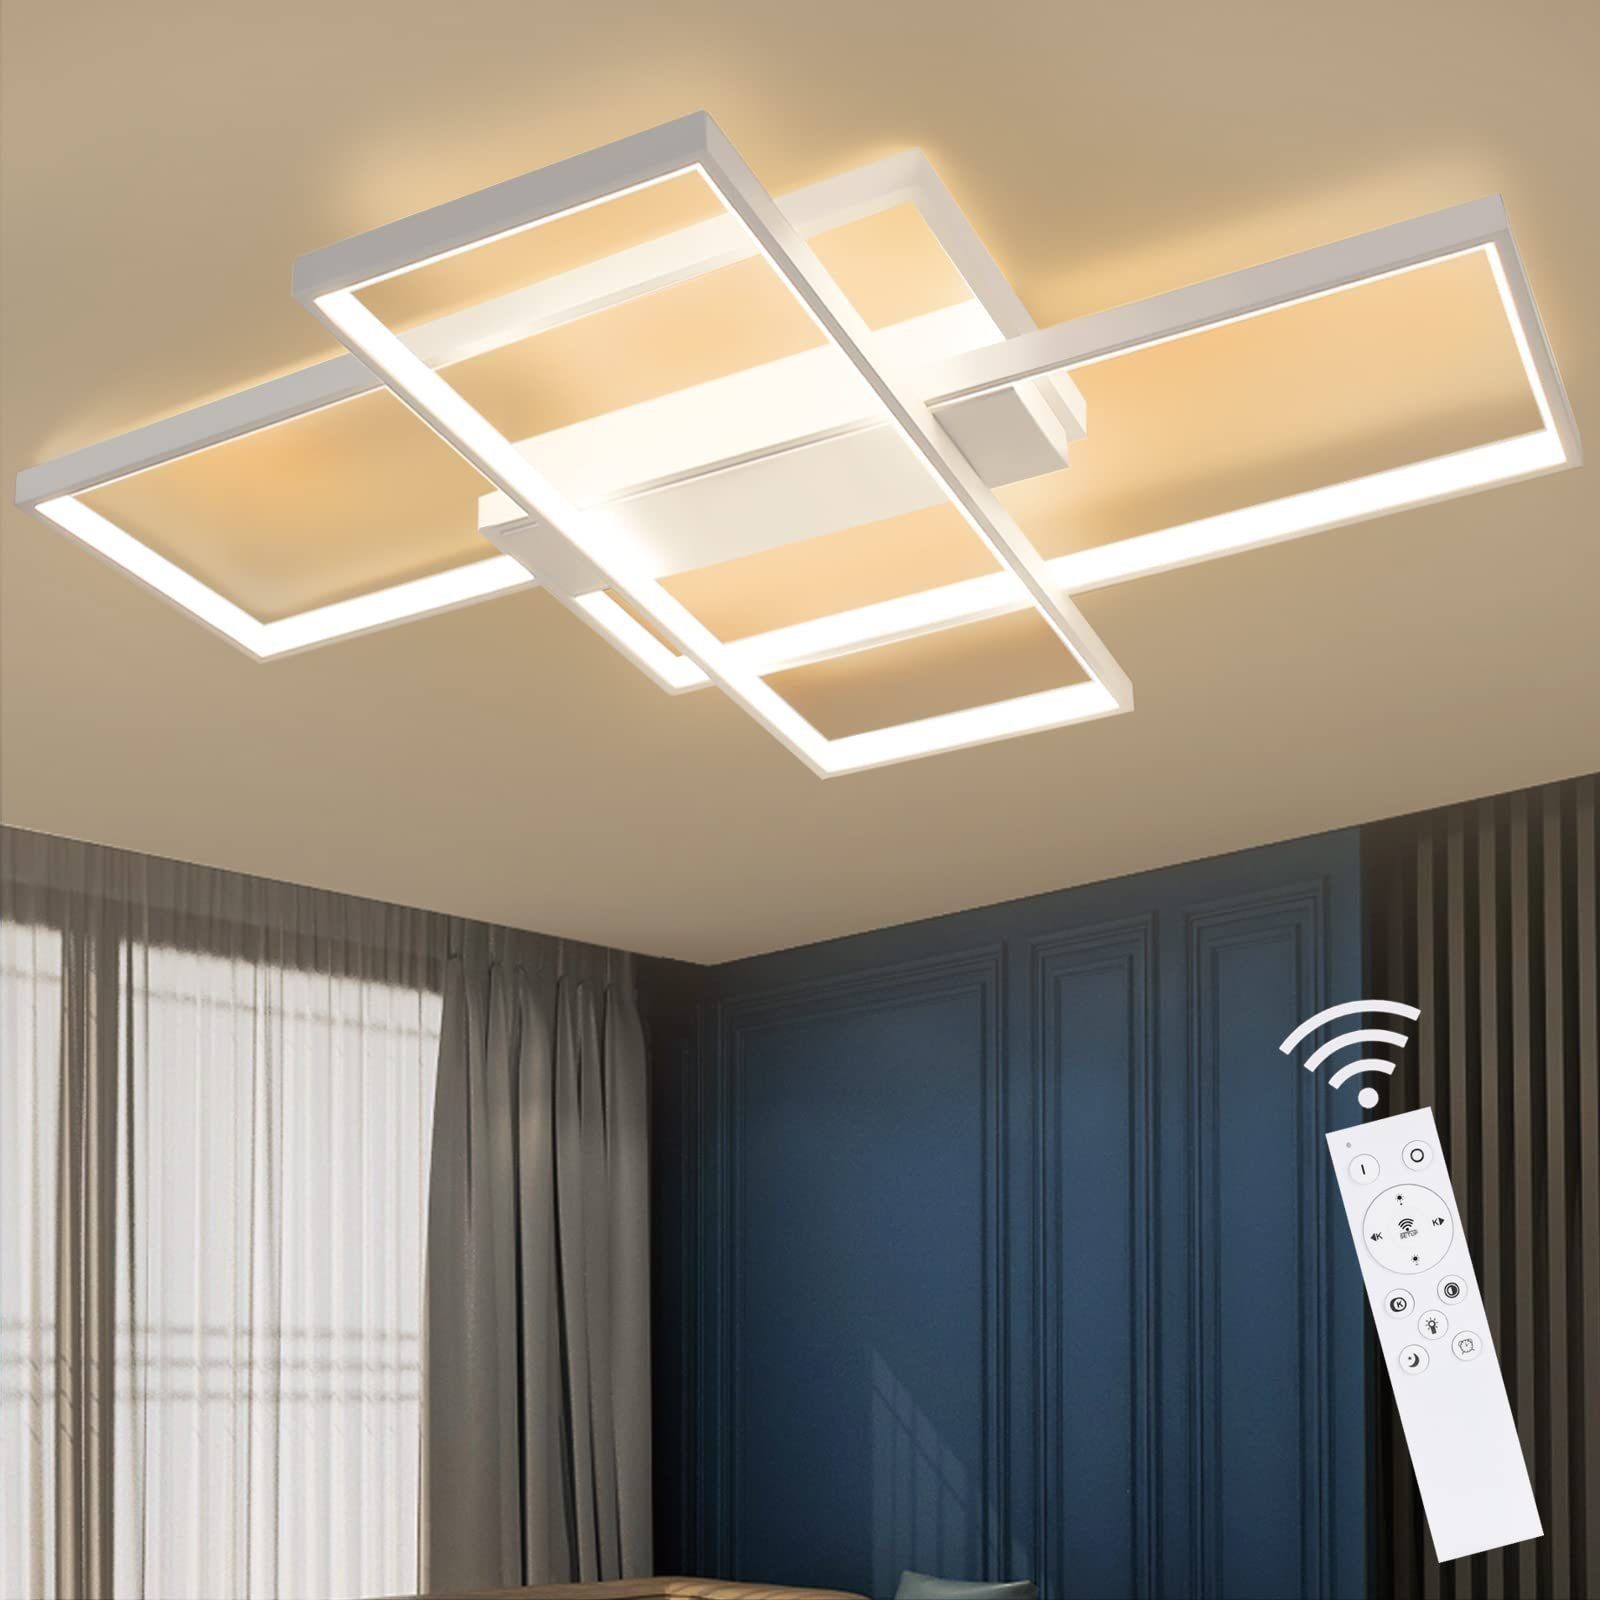 ZMH LED Deckenleuchte Modern Deckenlampe - Große Wohnzimmerlampe Dimmbar 88W, LED fest integriert, 3000-6000k, Deckenbeleuchtung für Wohnzimmer Büro, Weiß